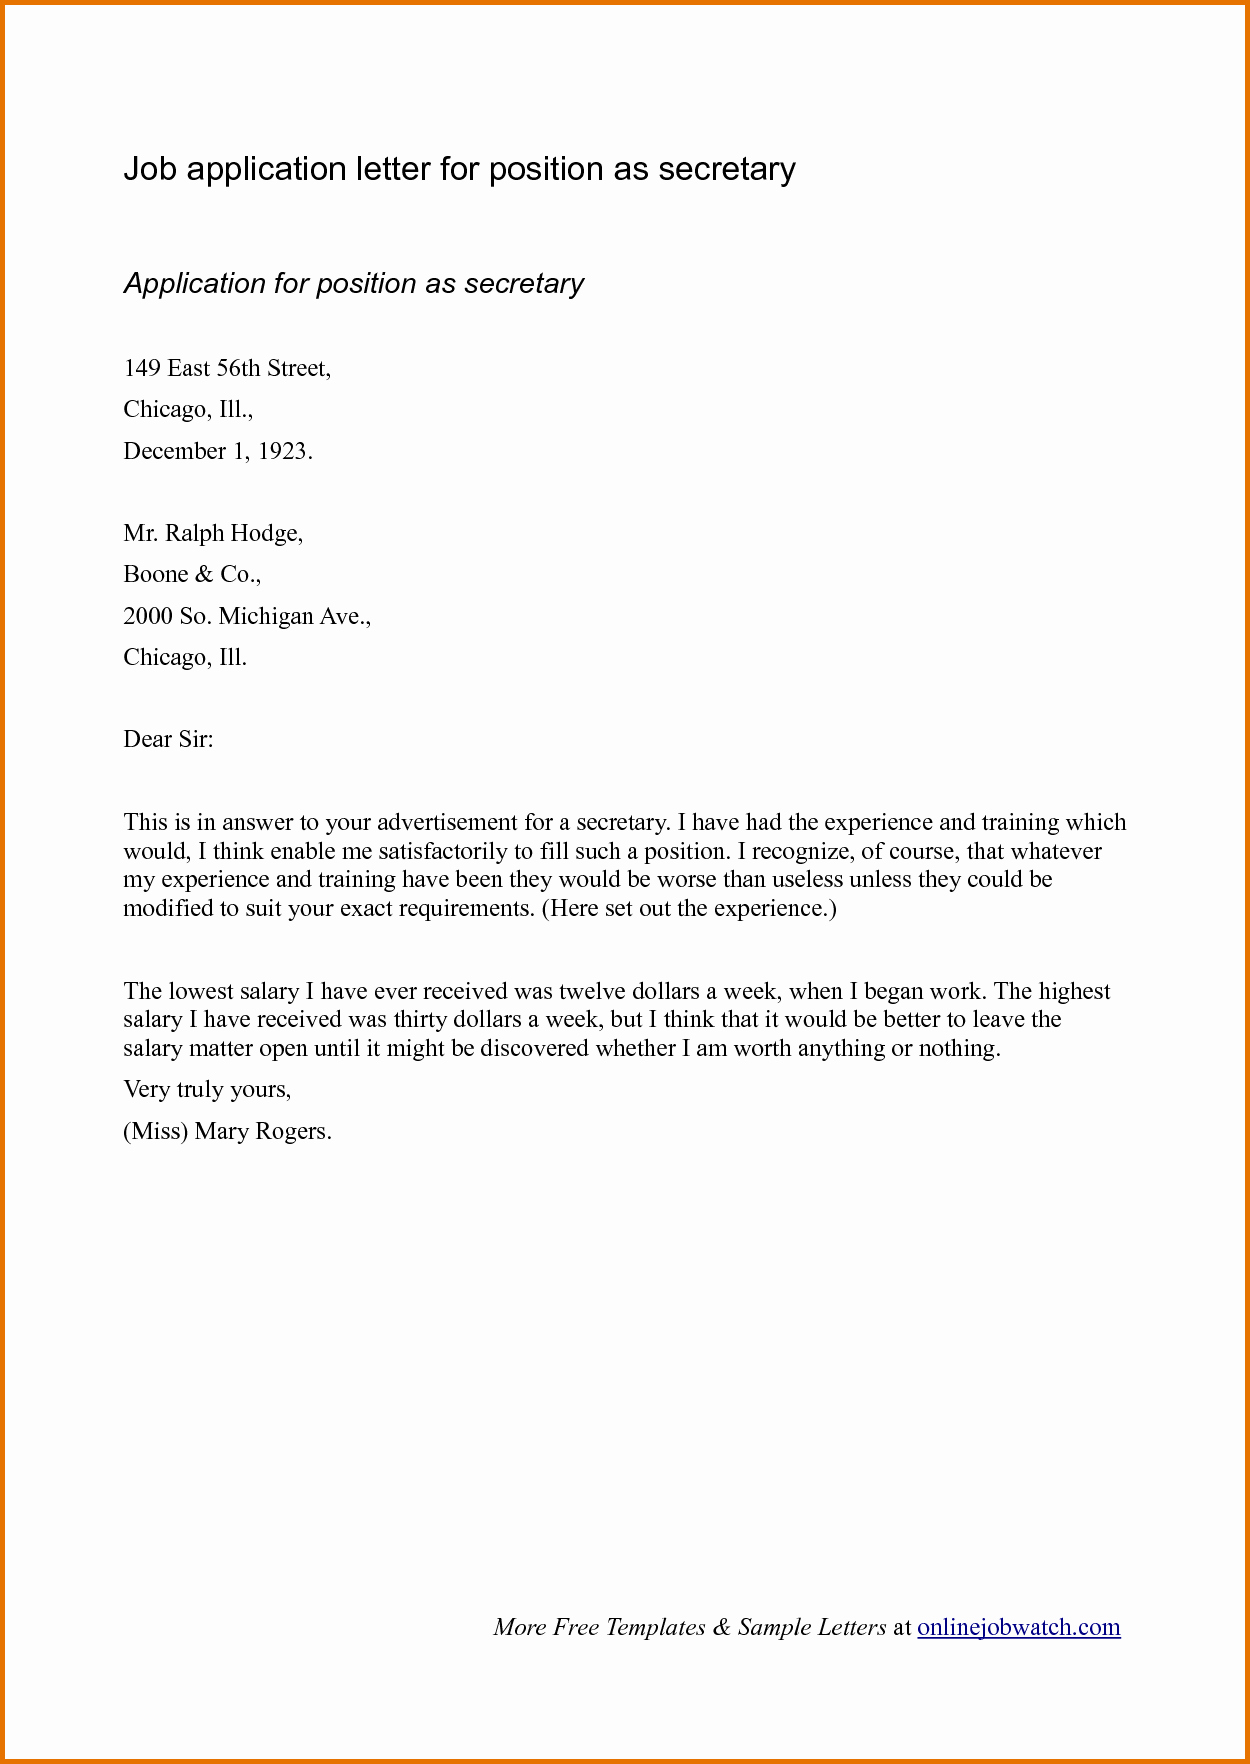 Sample Application Letter for Job Applyreference Letters